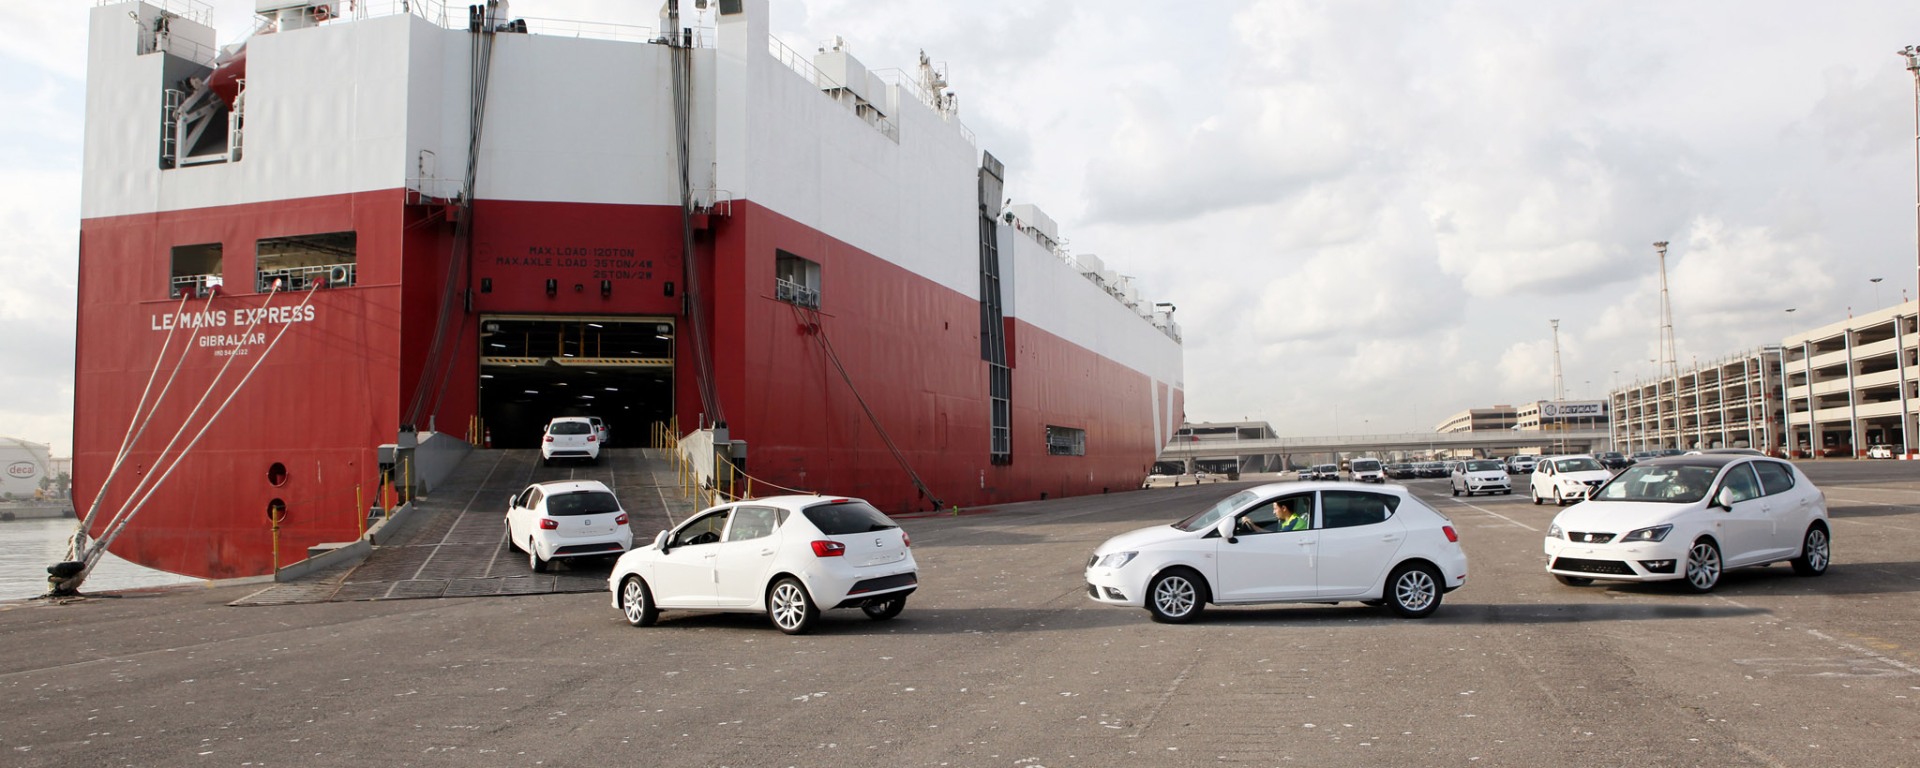 setram logistica automóvil puerto de barcelona logistica integral coches